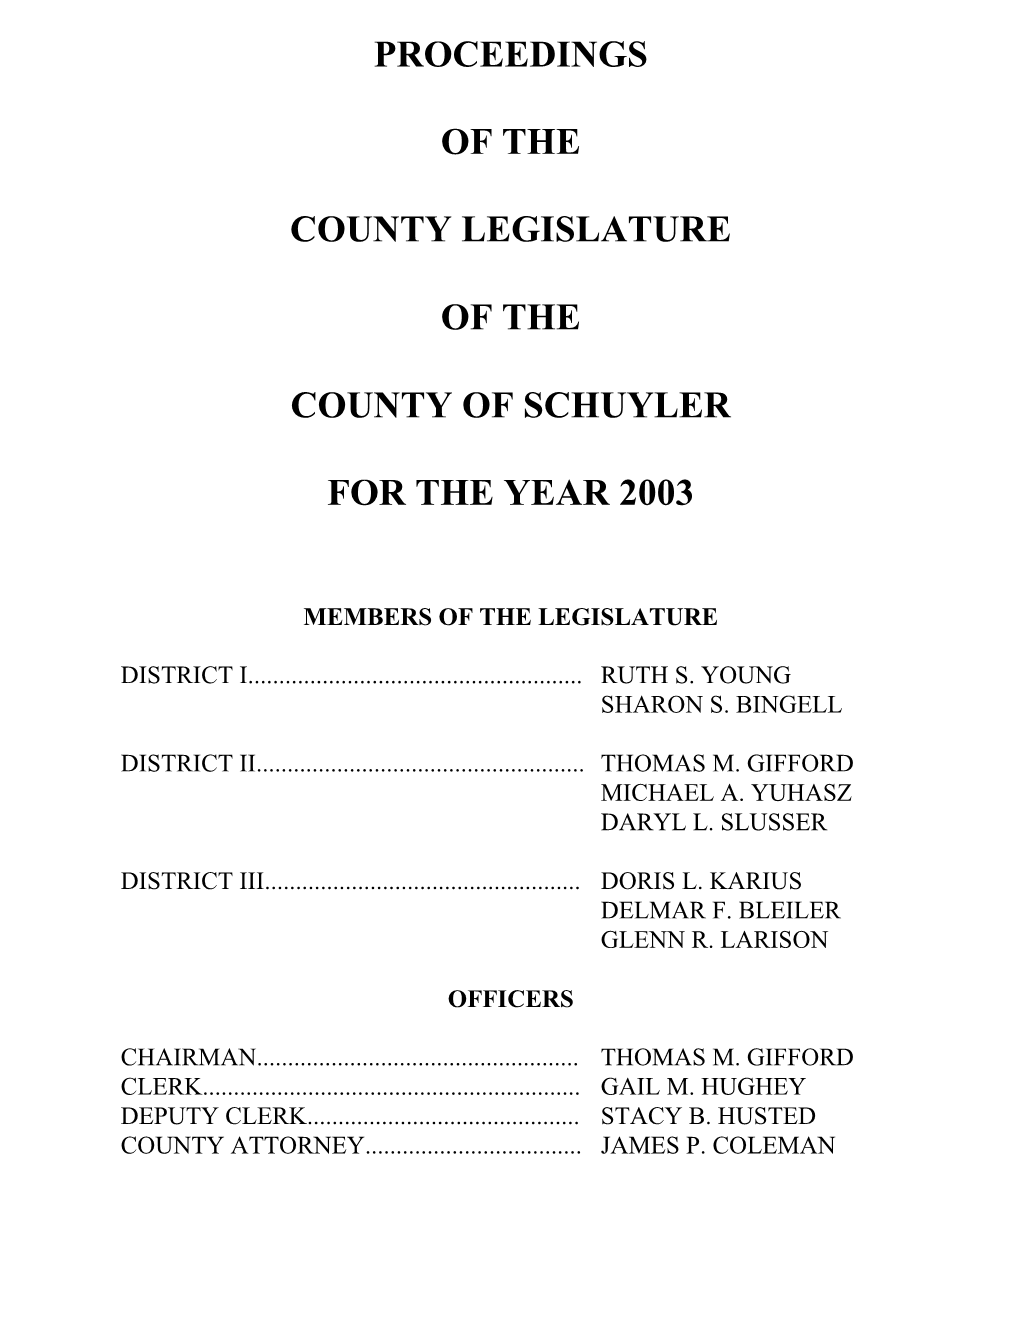 Minutes of the May 13, 2002 Regular Meeting, June 10, 2002 Regular Meeting and June 17, 2002 Special Meeting of the Schuyler County Legislature 14